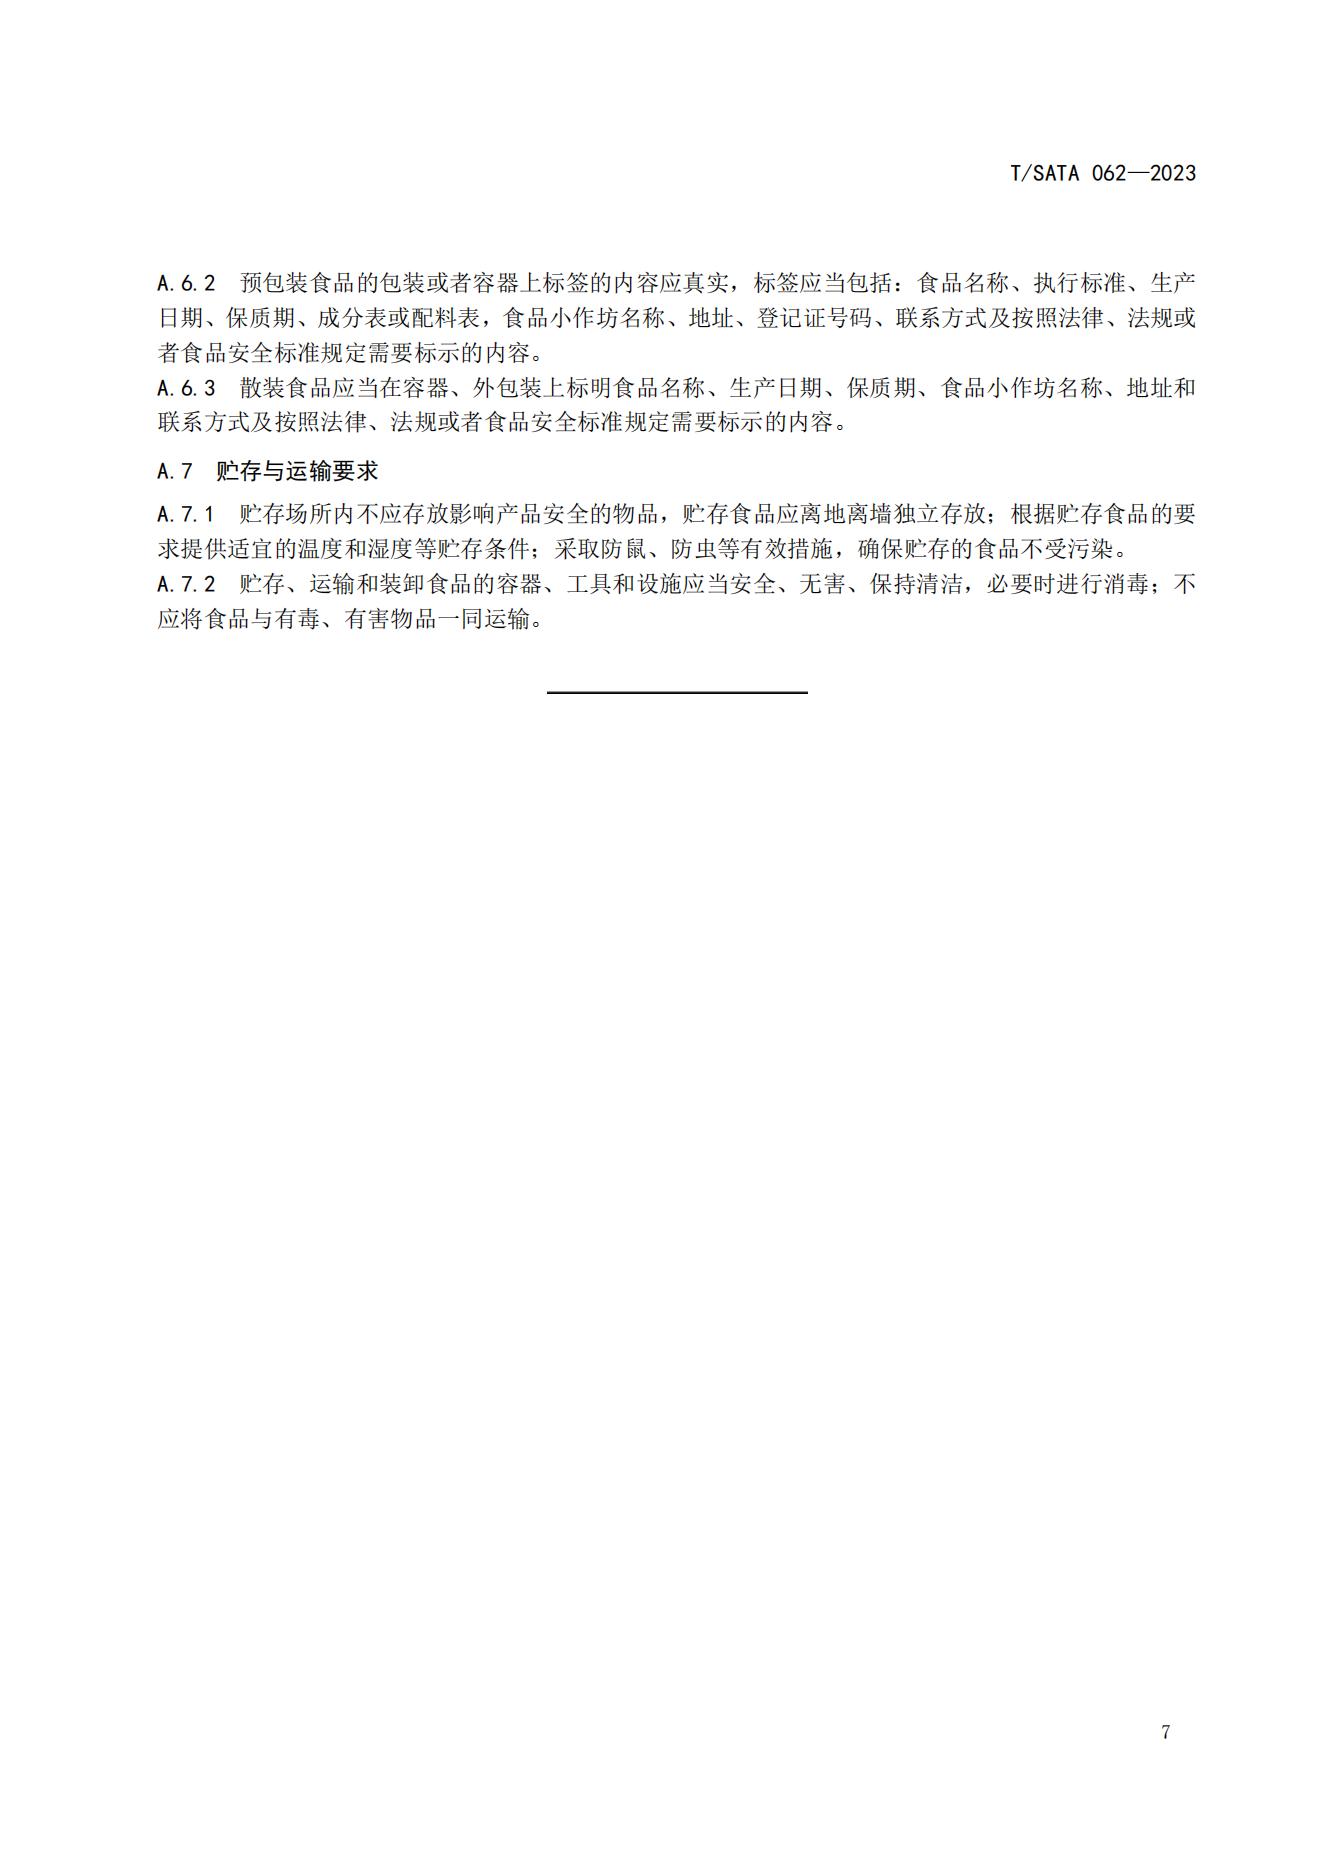 TSATA 062-2023标准文本-小作坊食品  非发酵豆制品（豆腐、豆腐干）_10.jpg